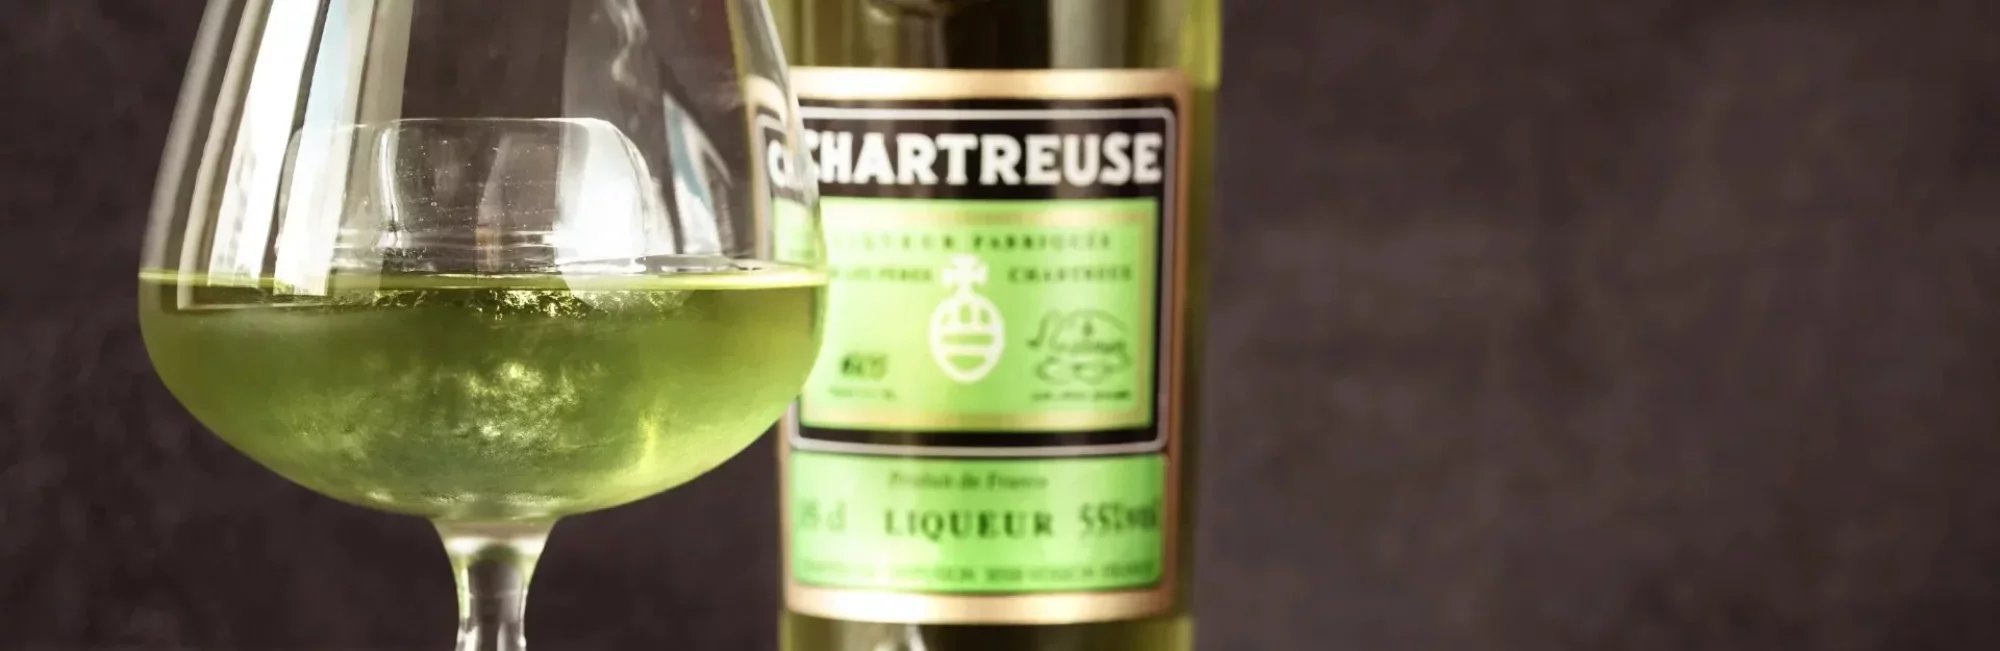 Coffret Chartreuse Verte + 3 verres shooter gravés - France